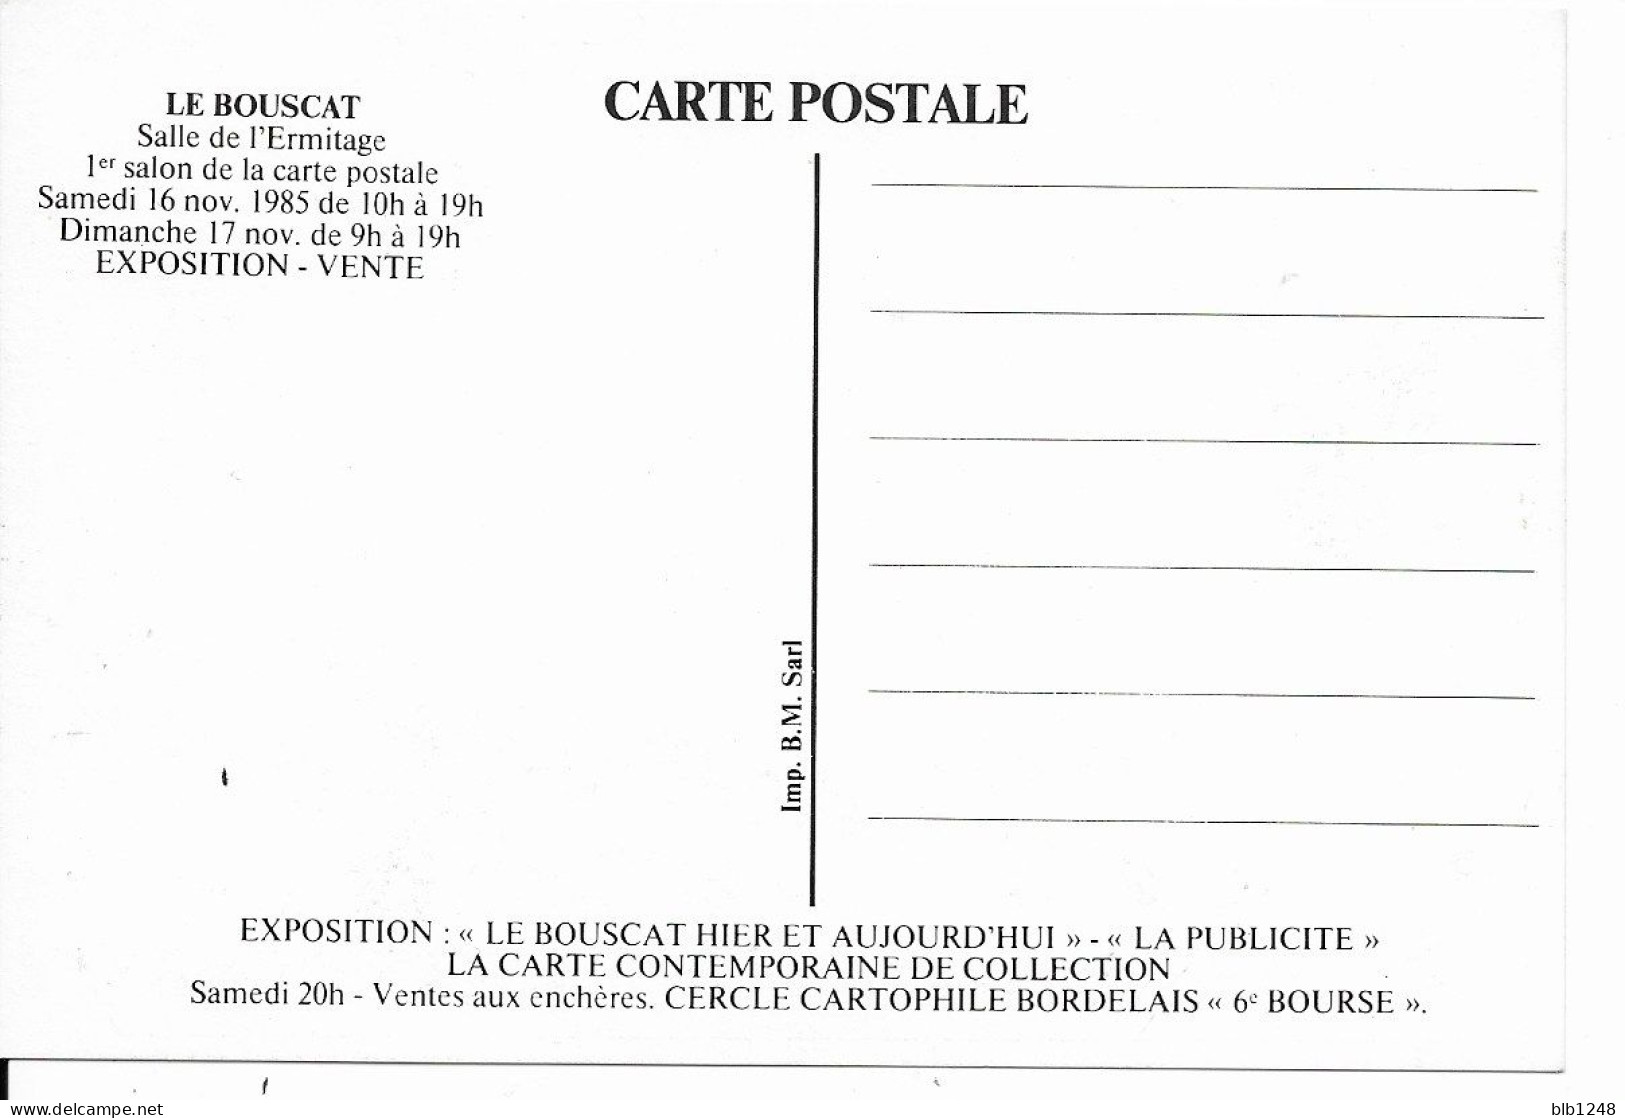 Bourses & Salons De Collections Le Bouscat 1er Salon De La Carte Postale 1985 Programme Plaza De Toros 1930 - Bourses & Salons De Collections